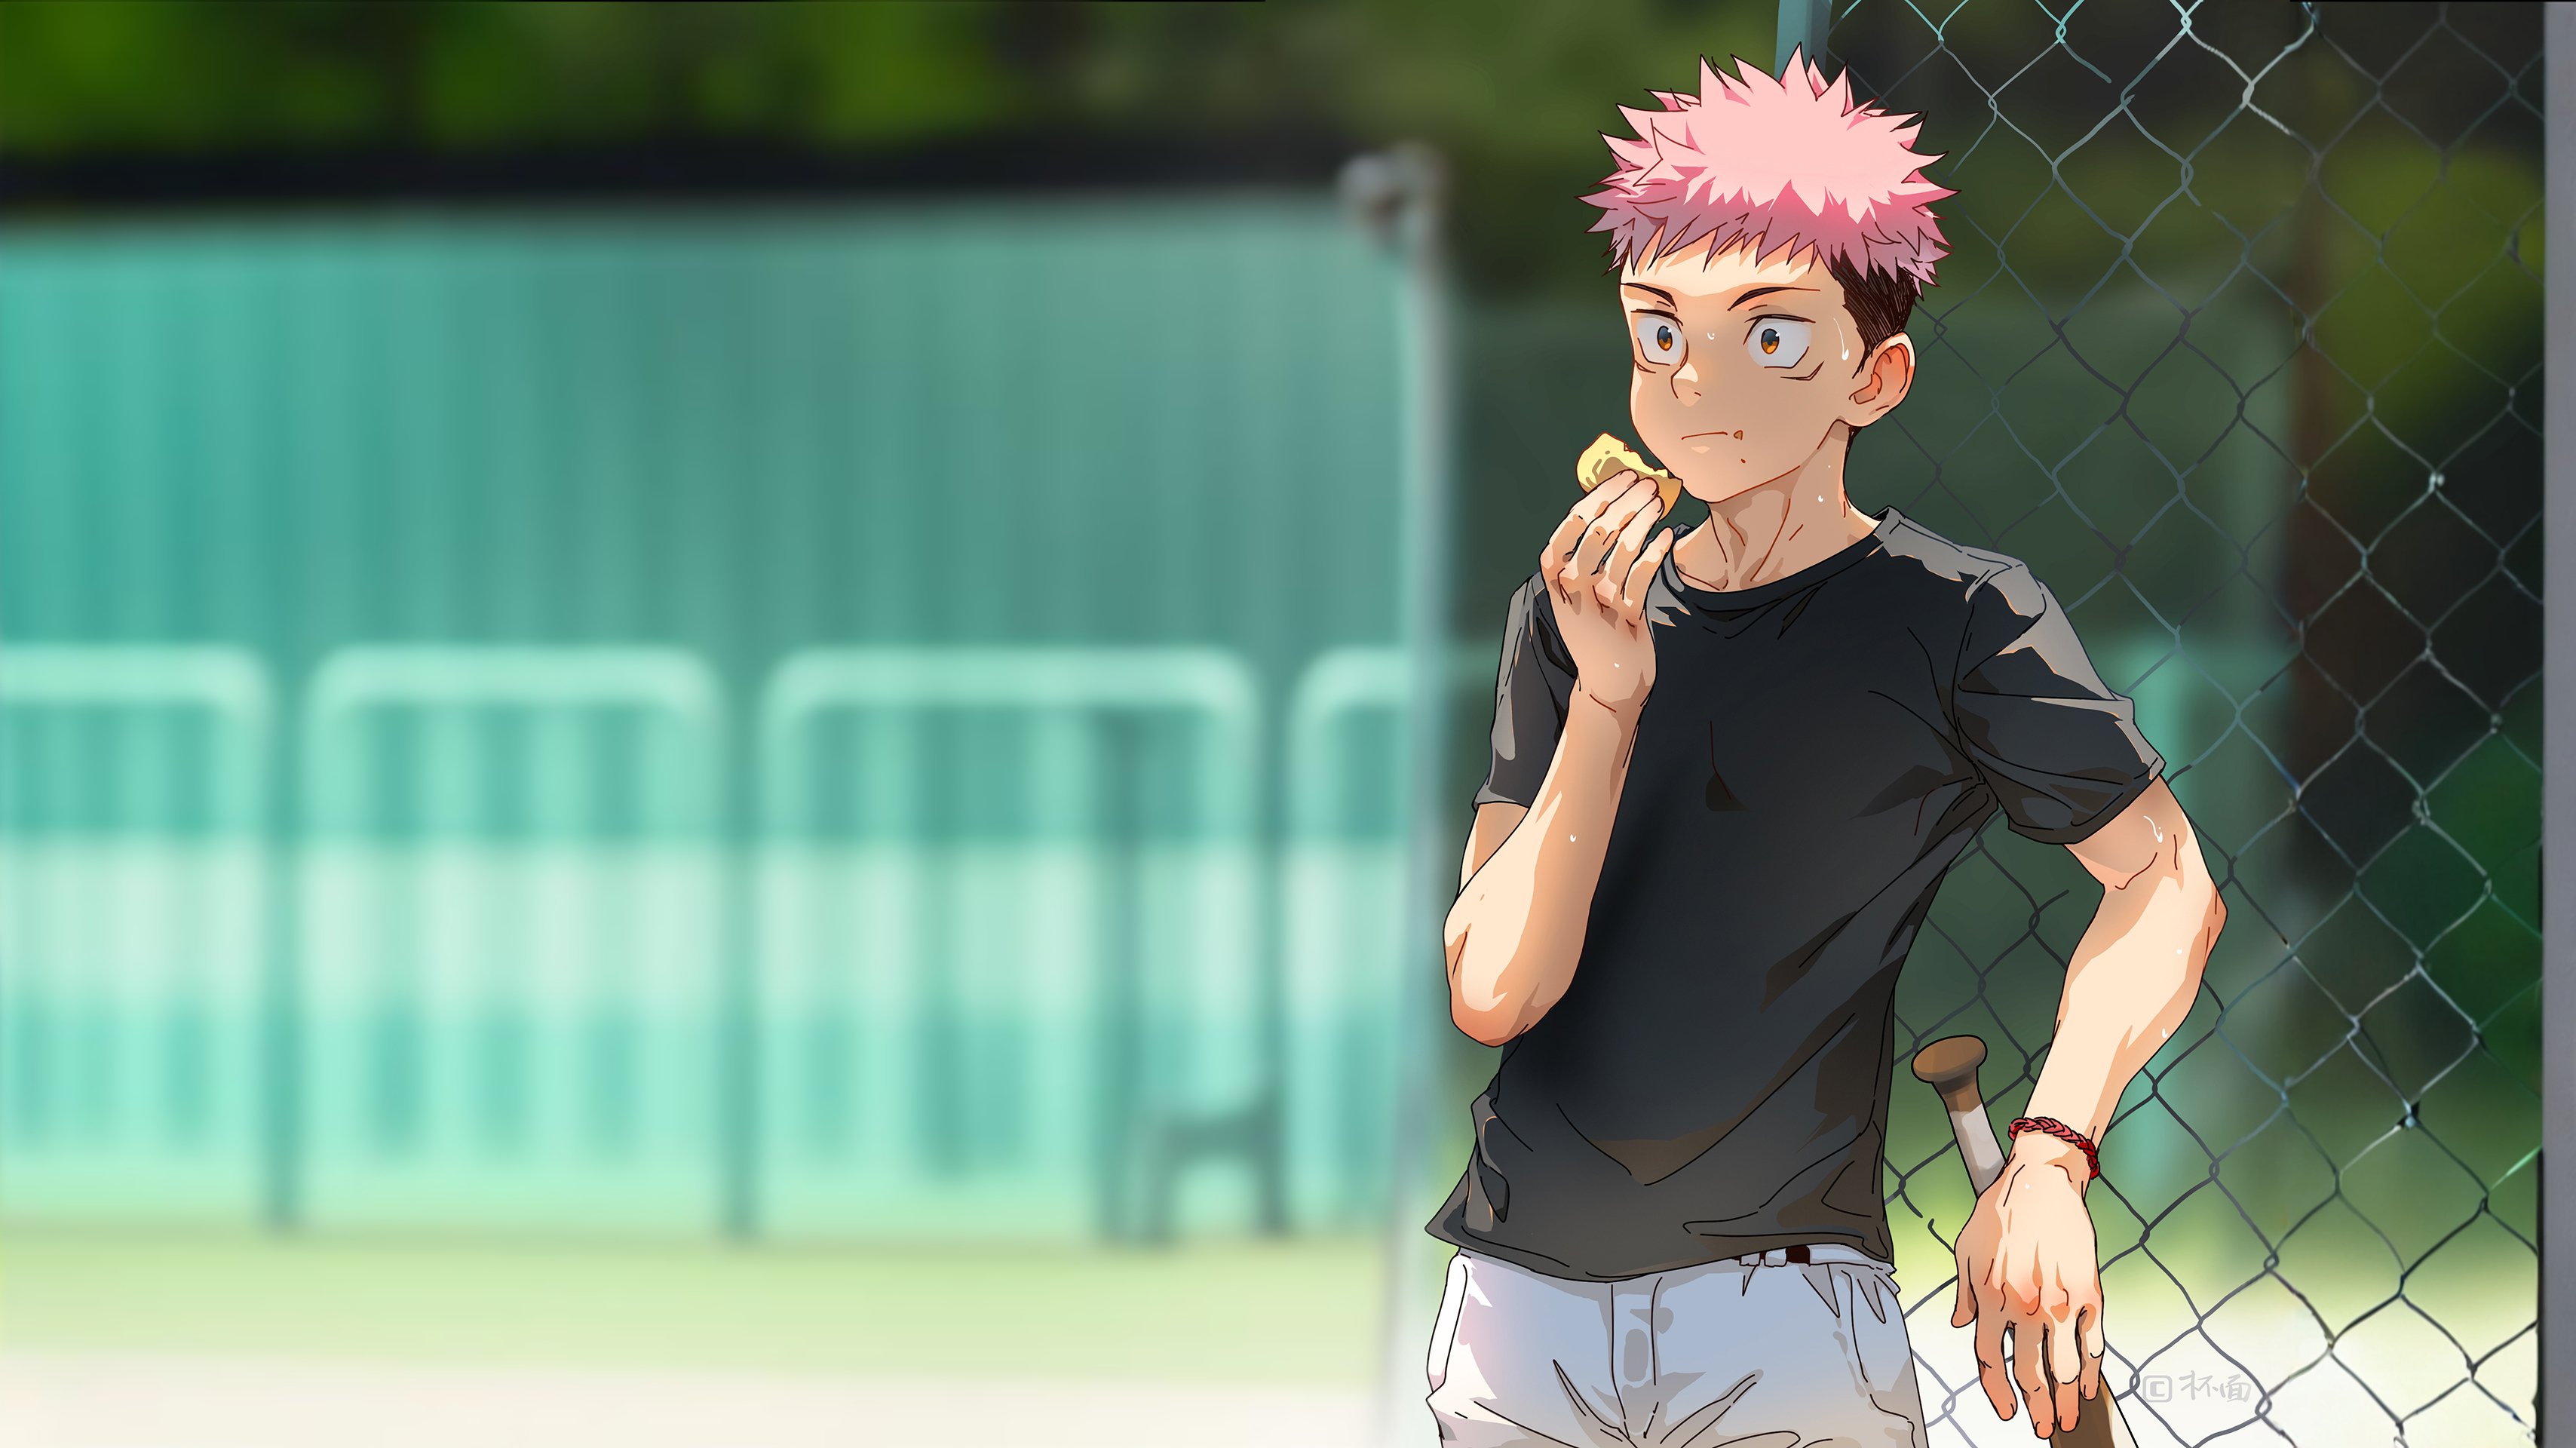 Anime 3416x1920 Beitemian eating Yuji Itadori Jujutsu Kaisen baseball